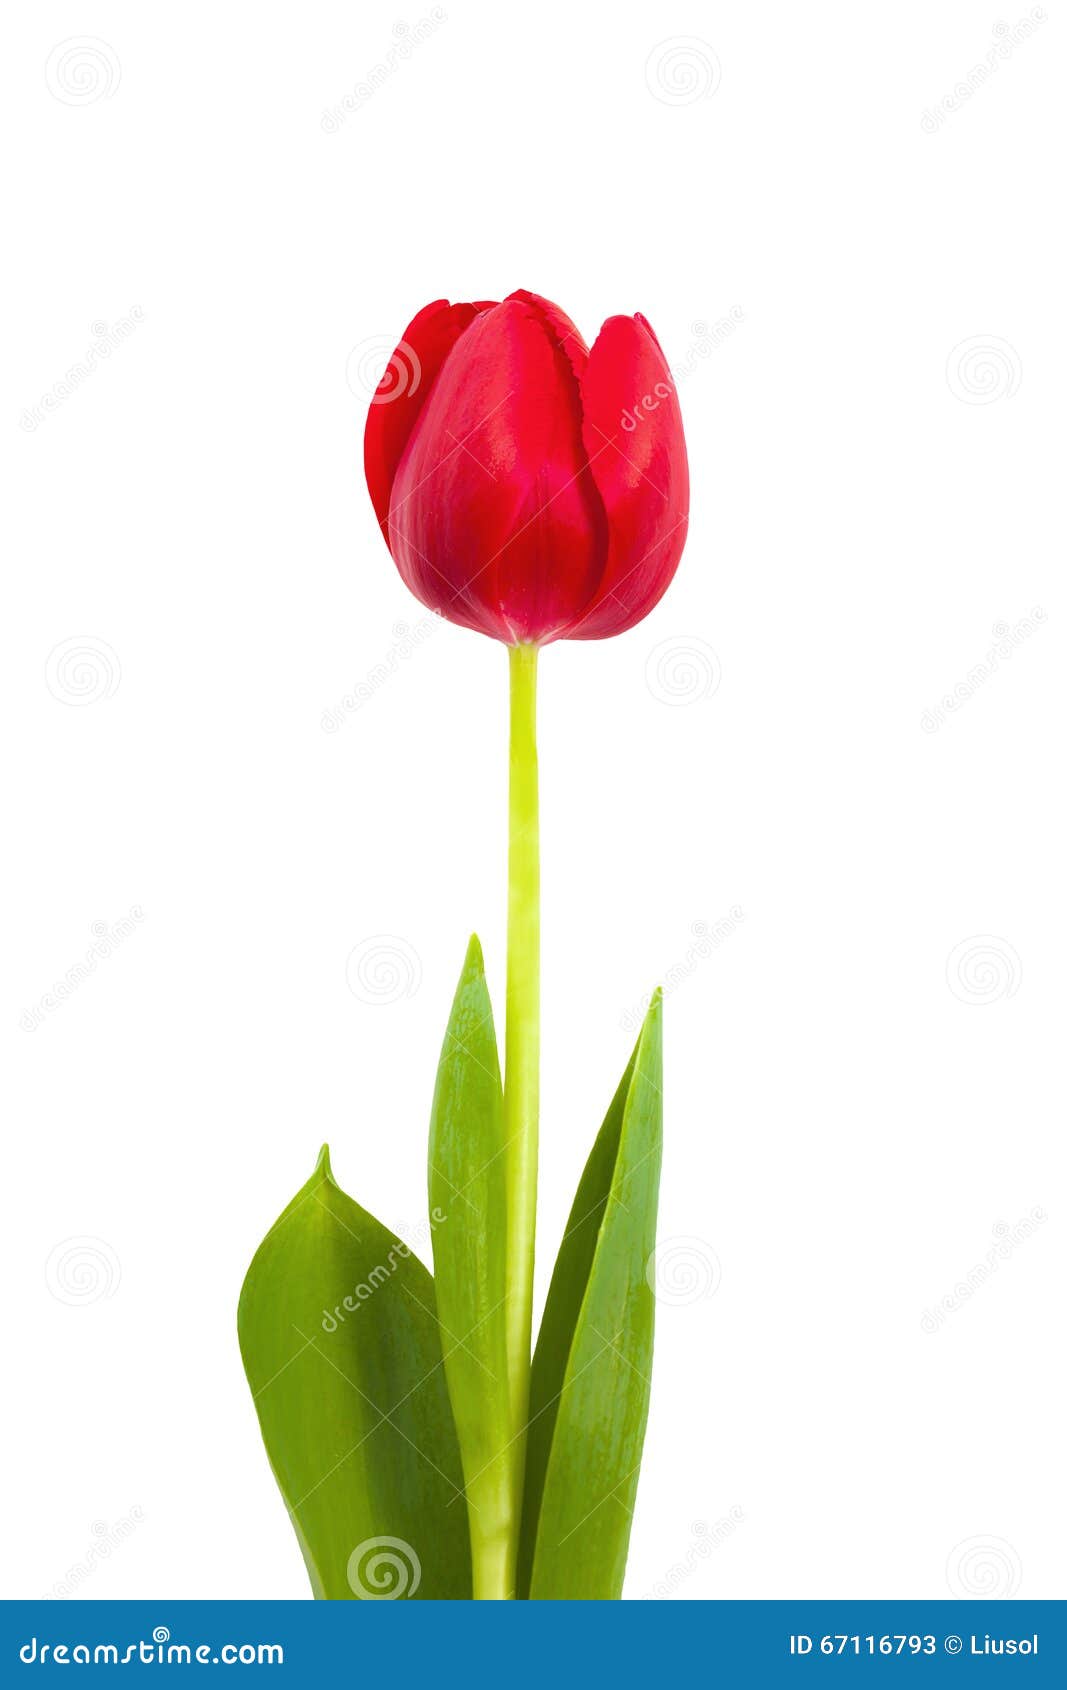 Tulipe De Fleur Sur Une Tige Image stock - Image du coeur, fleurs: 67116793